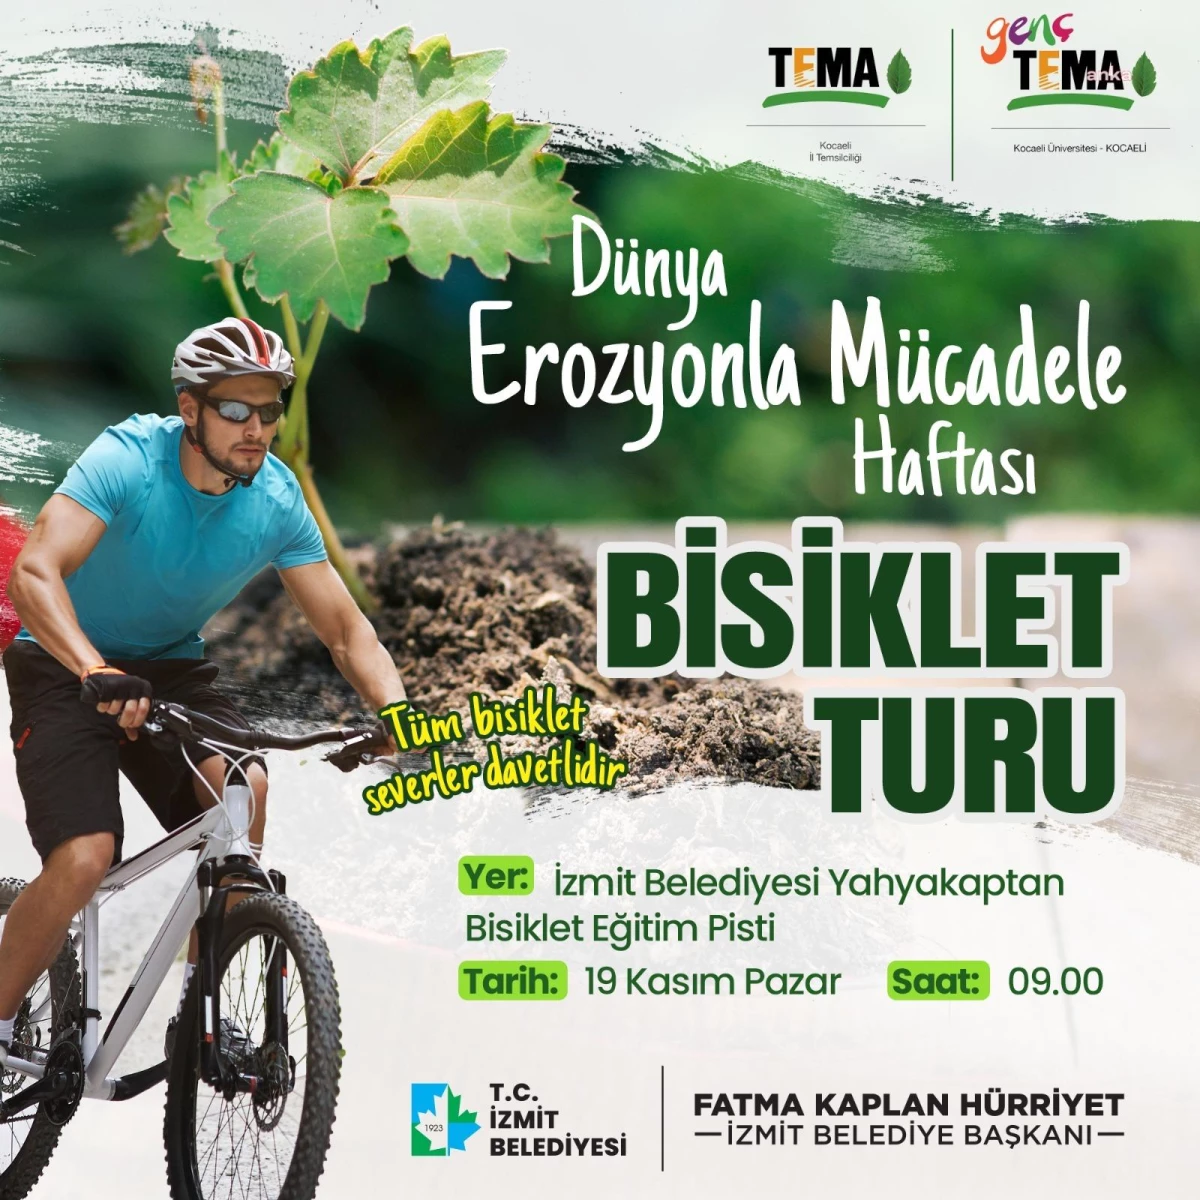 İzmit Belediyesi ve TEMA Vakfı iş birliğiyle Erozyonla Mücadele Haftası Bisiklet Turu düzenlenecek